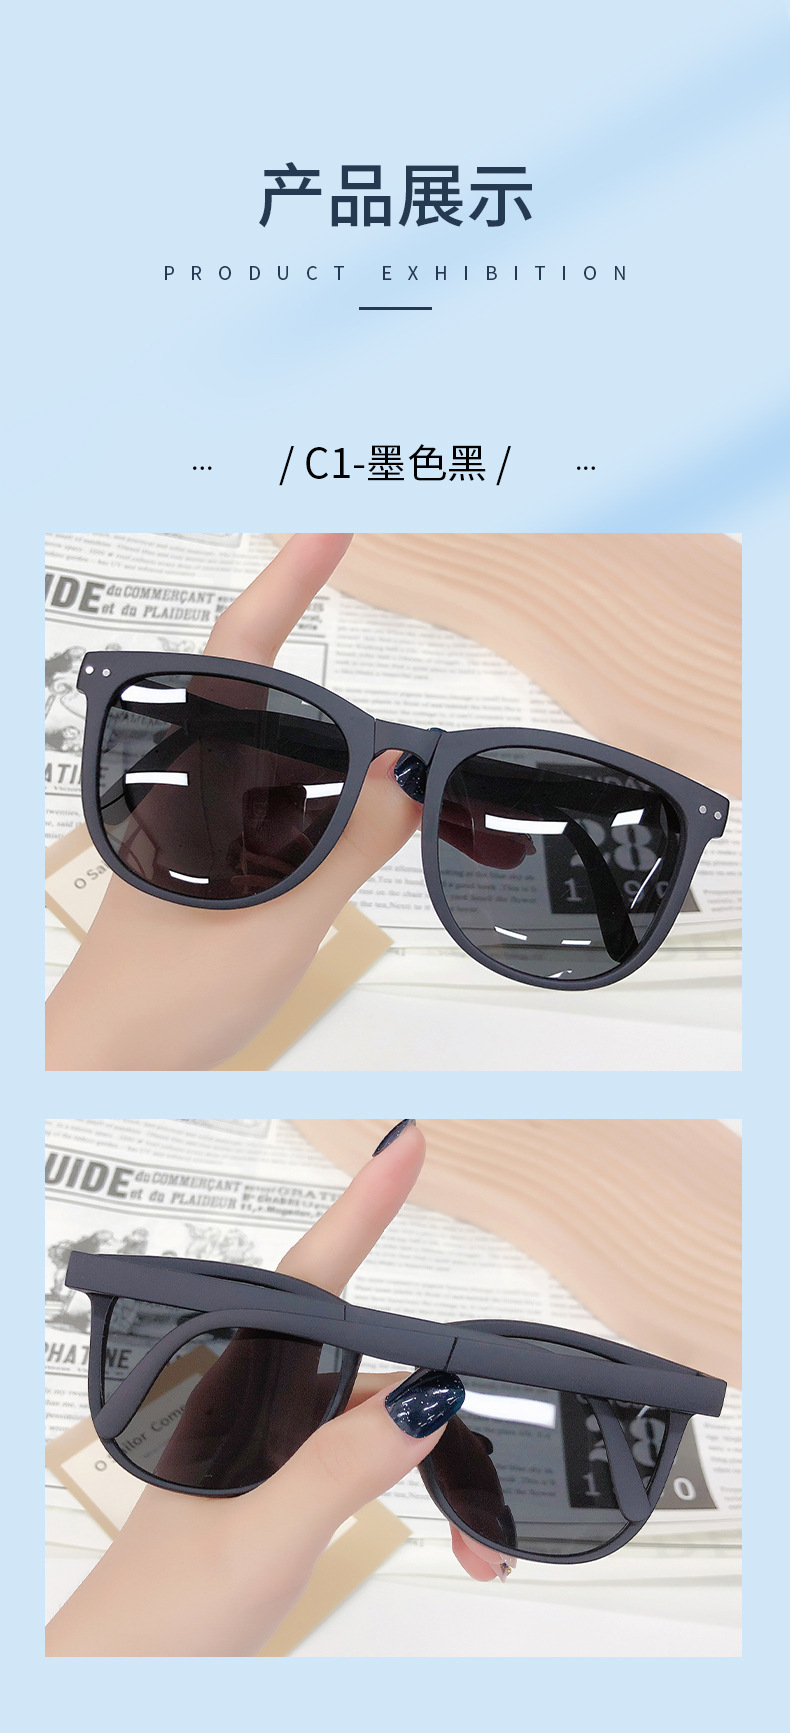 新款折叠太阳镜女 蕉下同款偏光墨镜 时尚便携带盒子折叠眼镜批发详情8